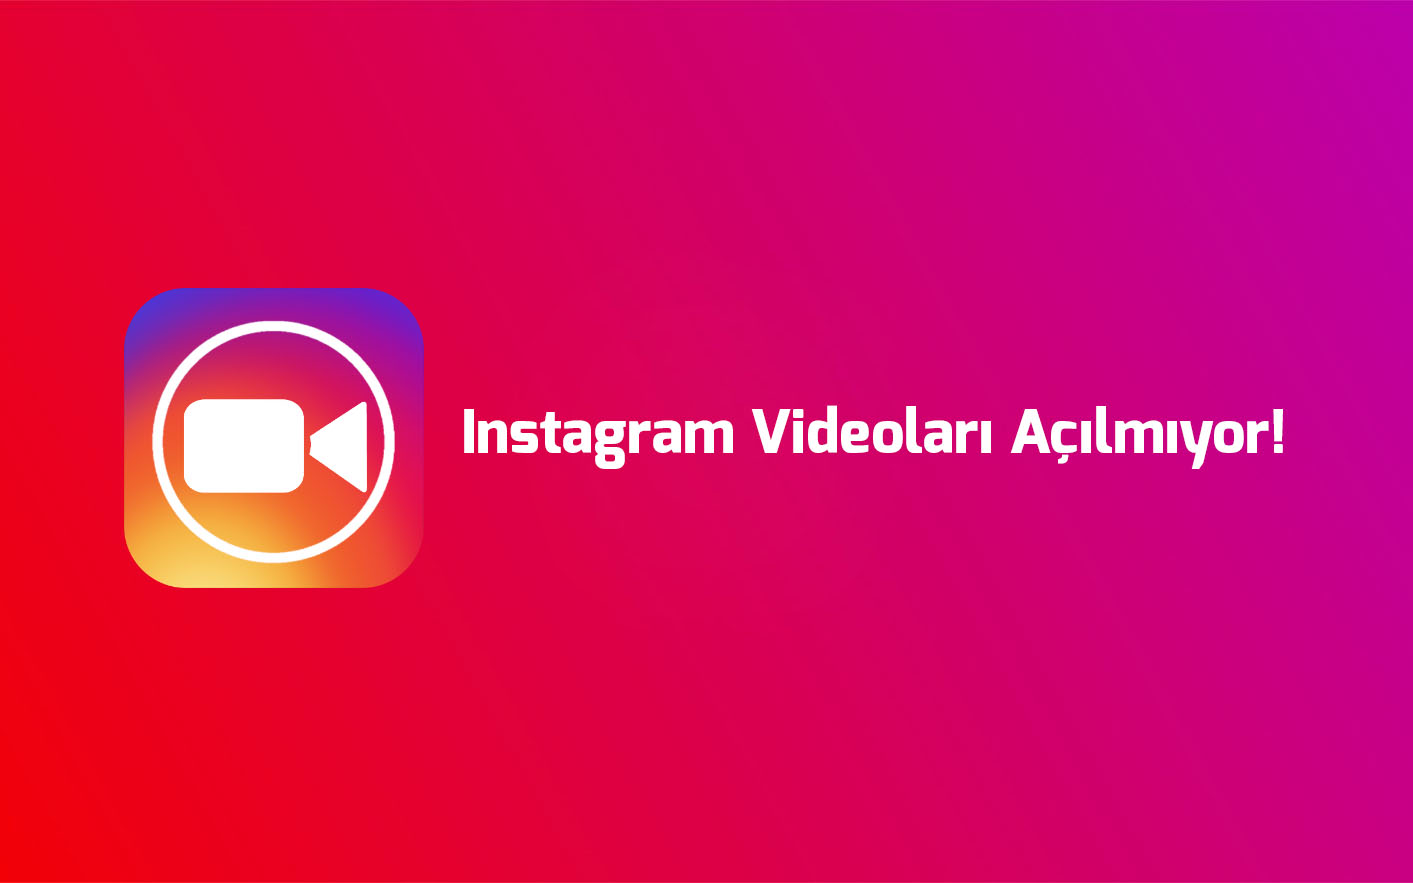 instagram-videolari-acilmiyor